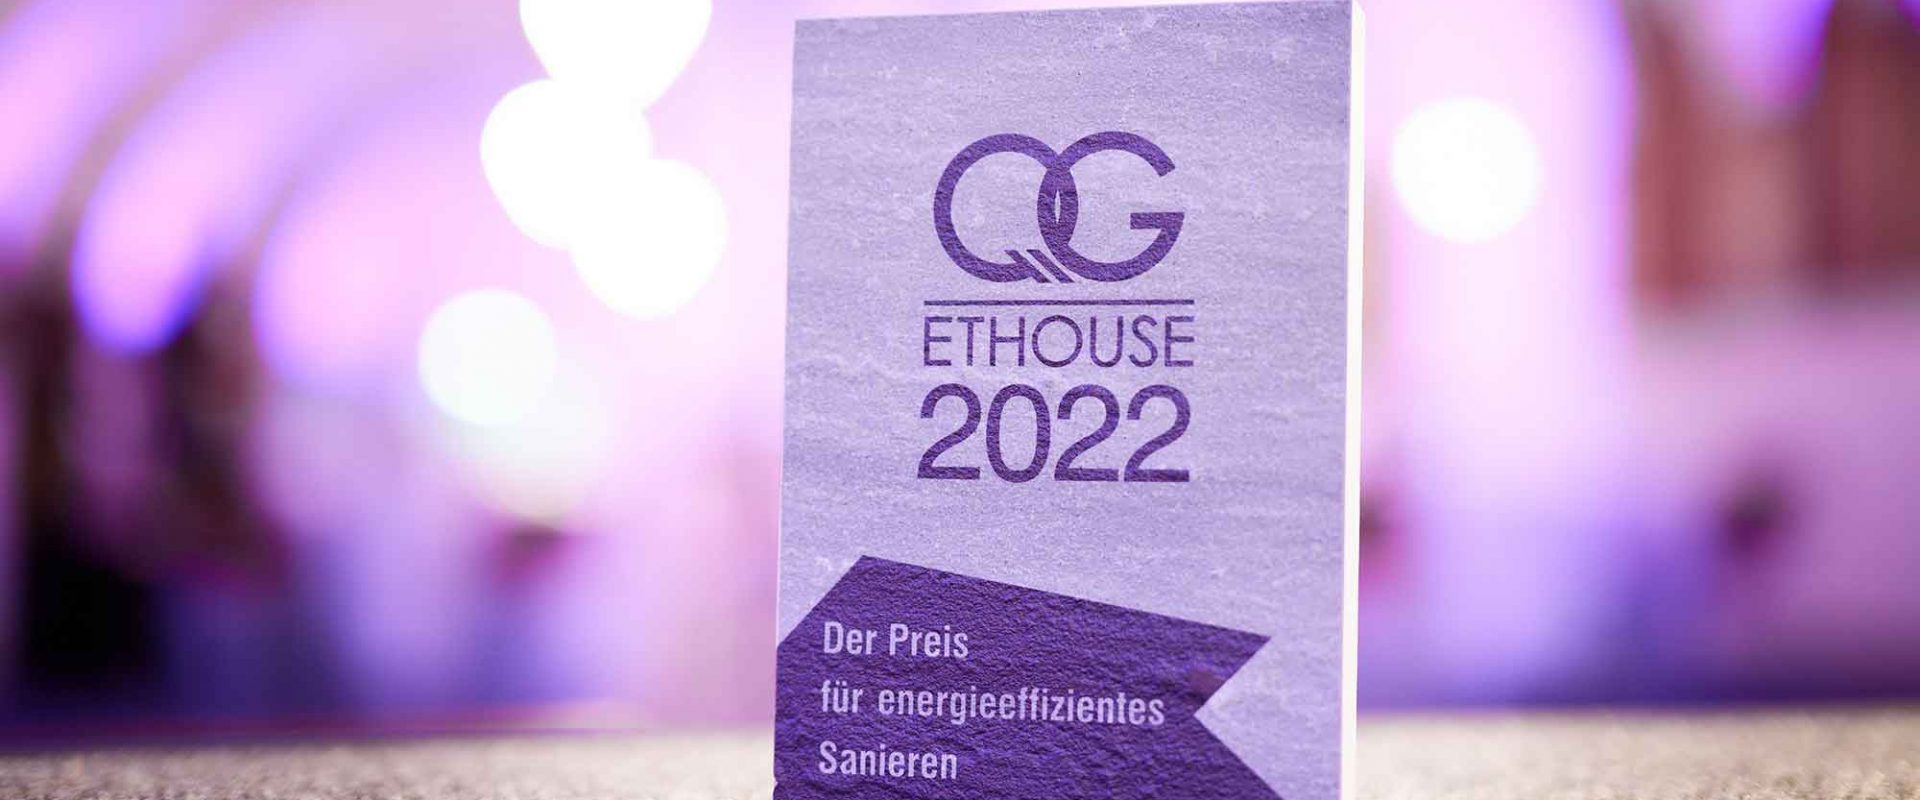 ETHOUSE Award 2022